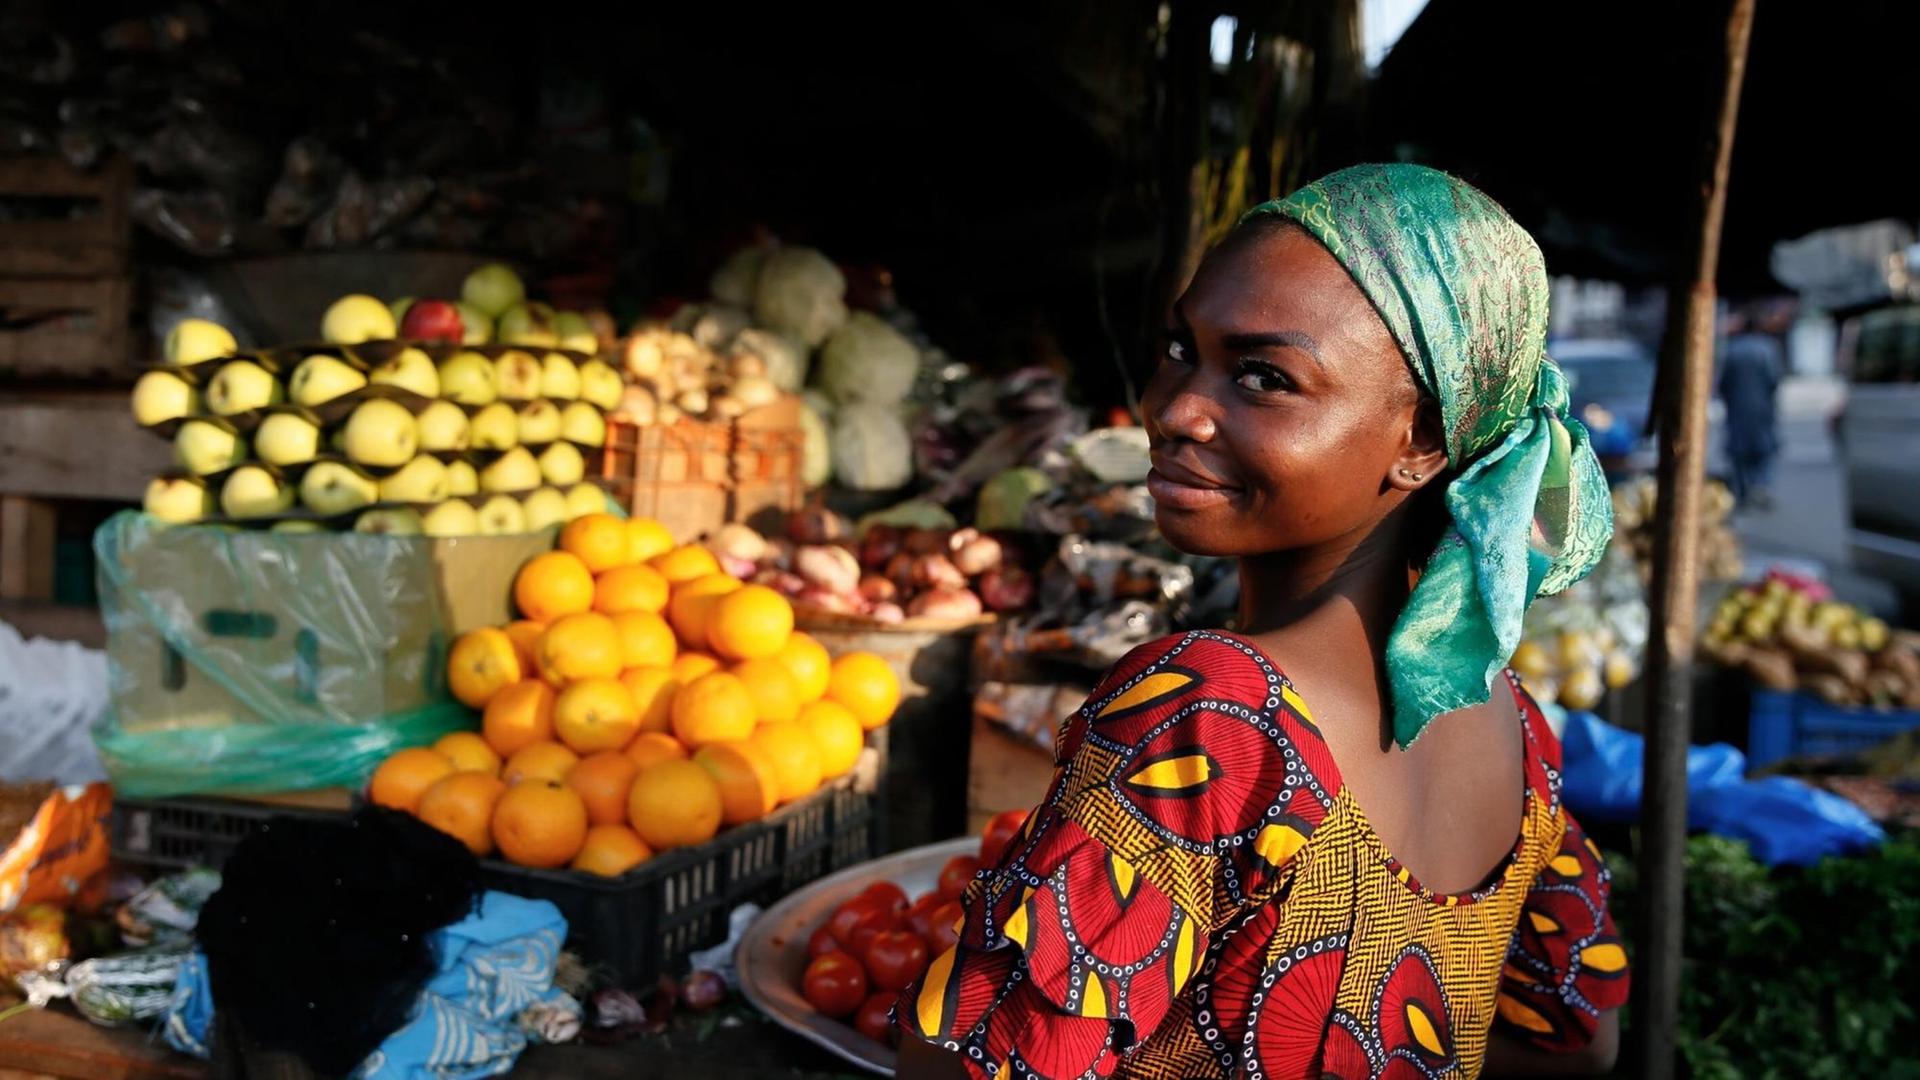 Eine Obstverkäuferin blickt über die Schulter in die Kamera. Im Hintergrund sind Obststände mit reifen Früchten zu sehen.